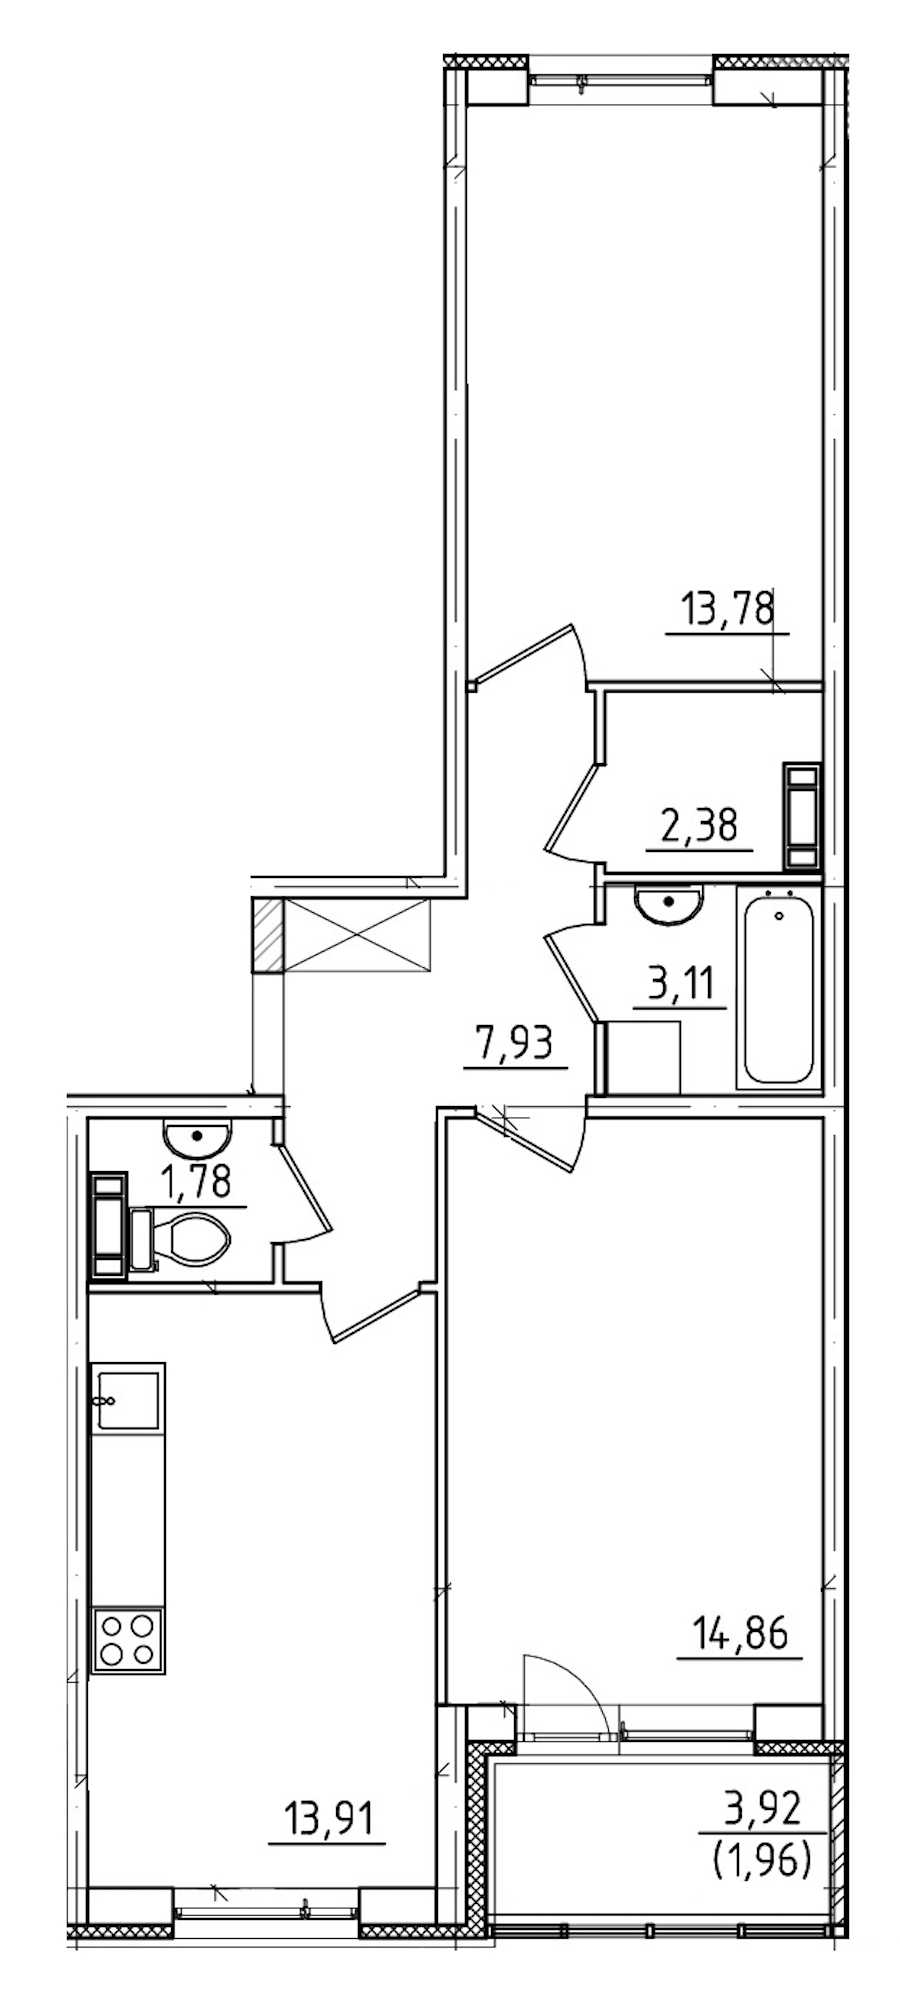 Двухкомнатная квартира в : площадь 59.71 м2 , этаж: 1 – купить в Санкт-Петербурге